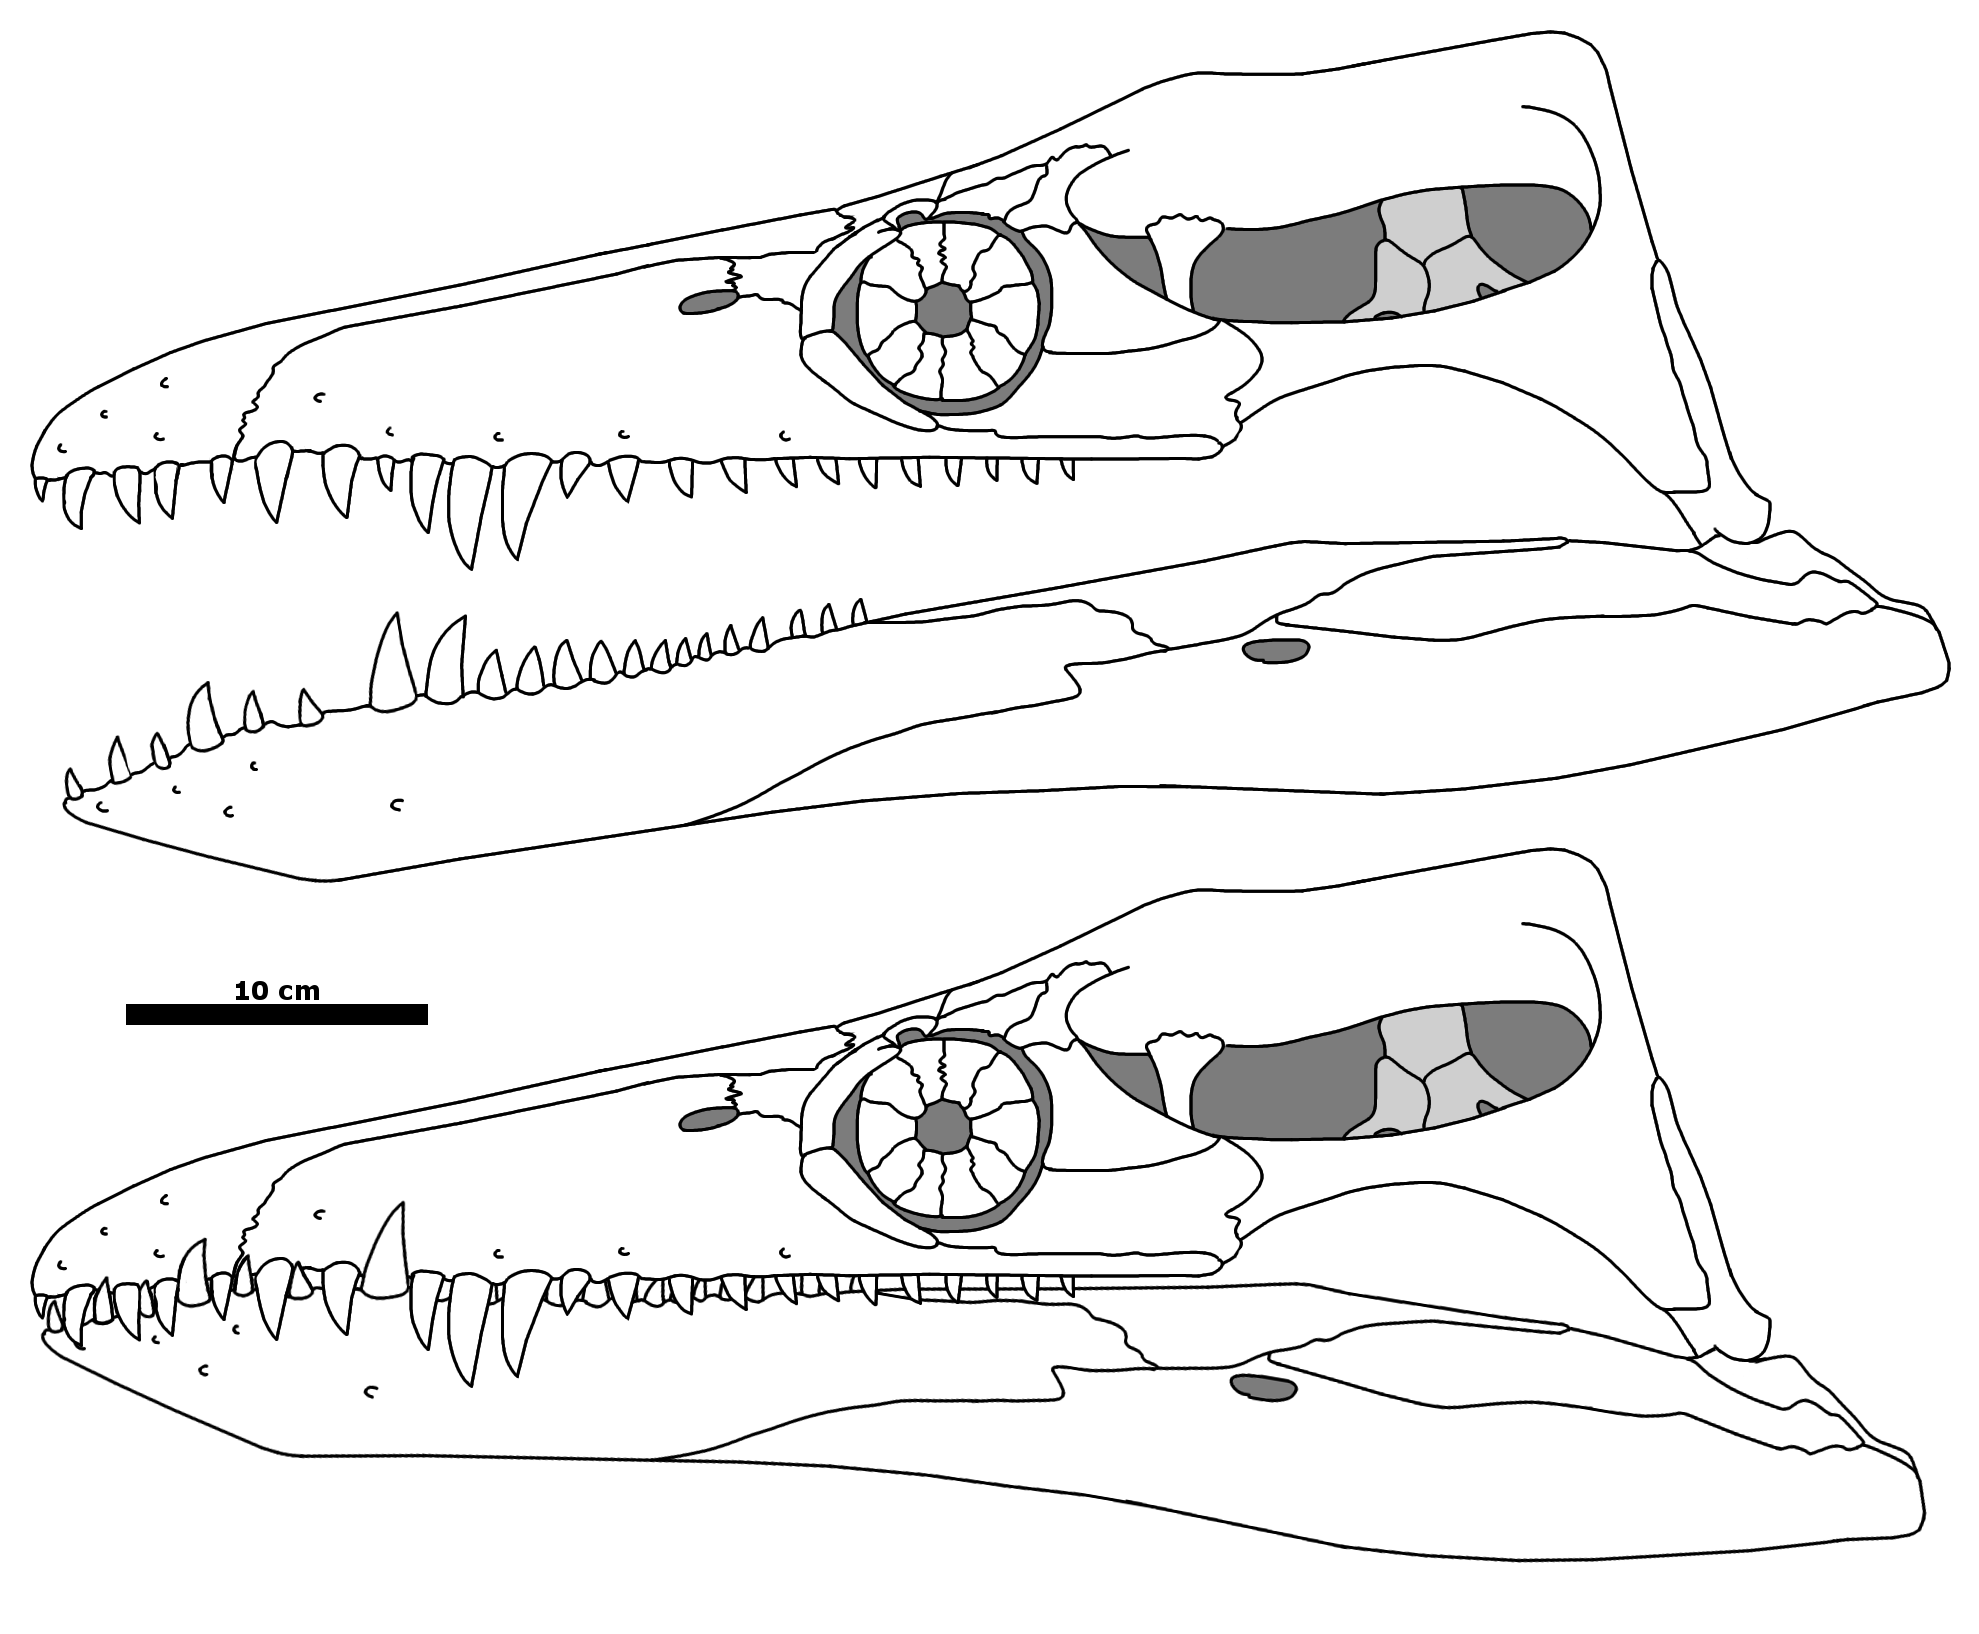 Deinosuchus hatcheri multiview skeletal by Fadeno on DeviantArt